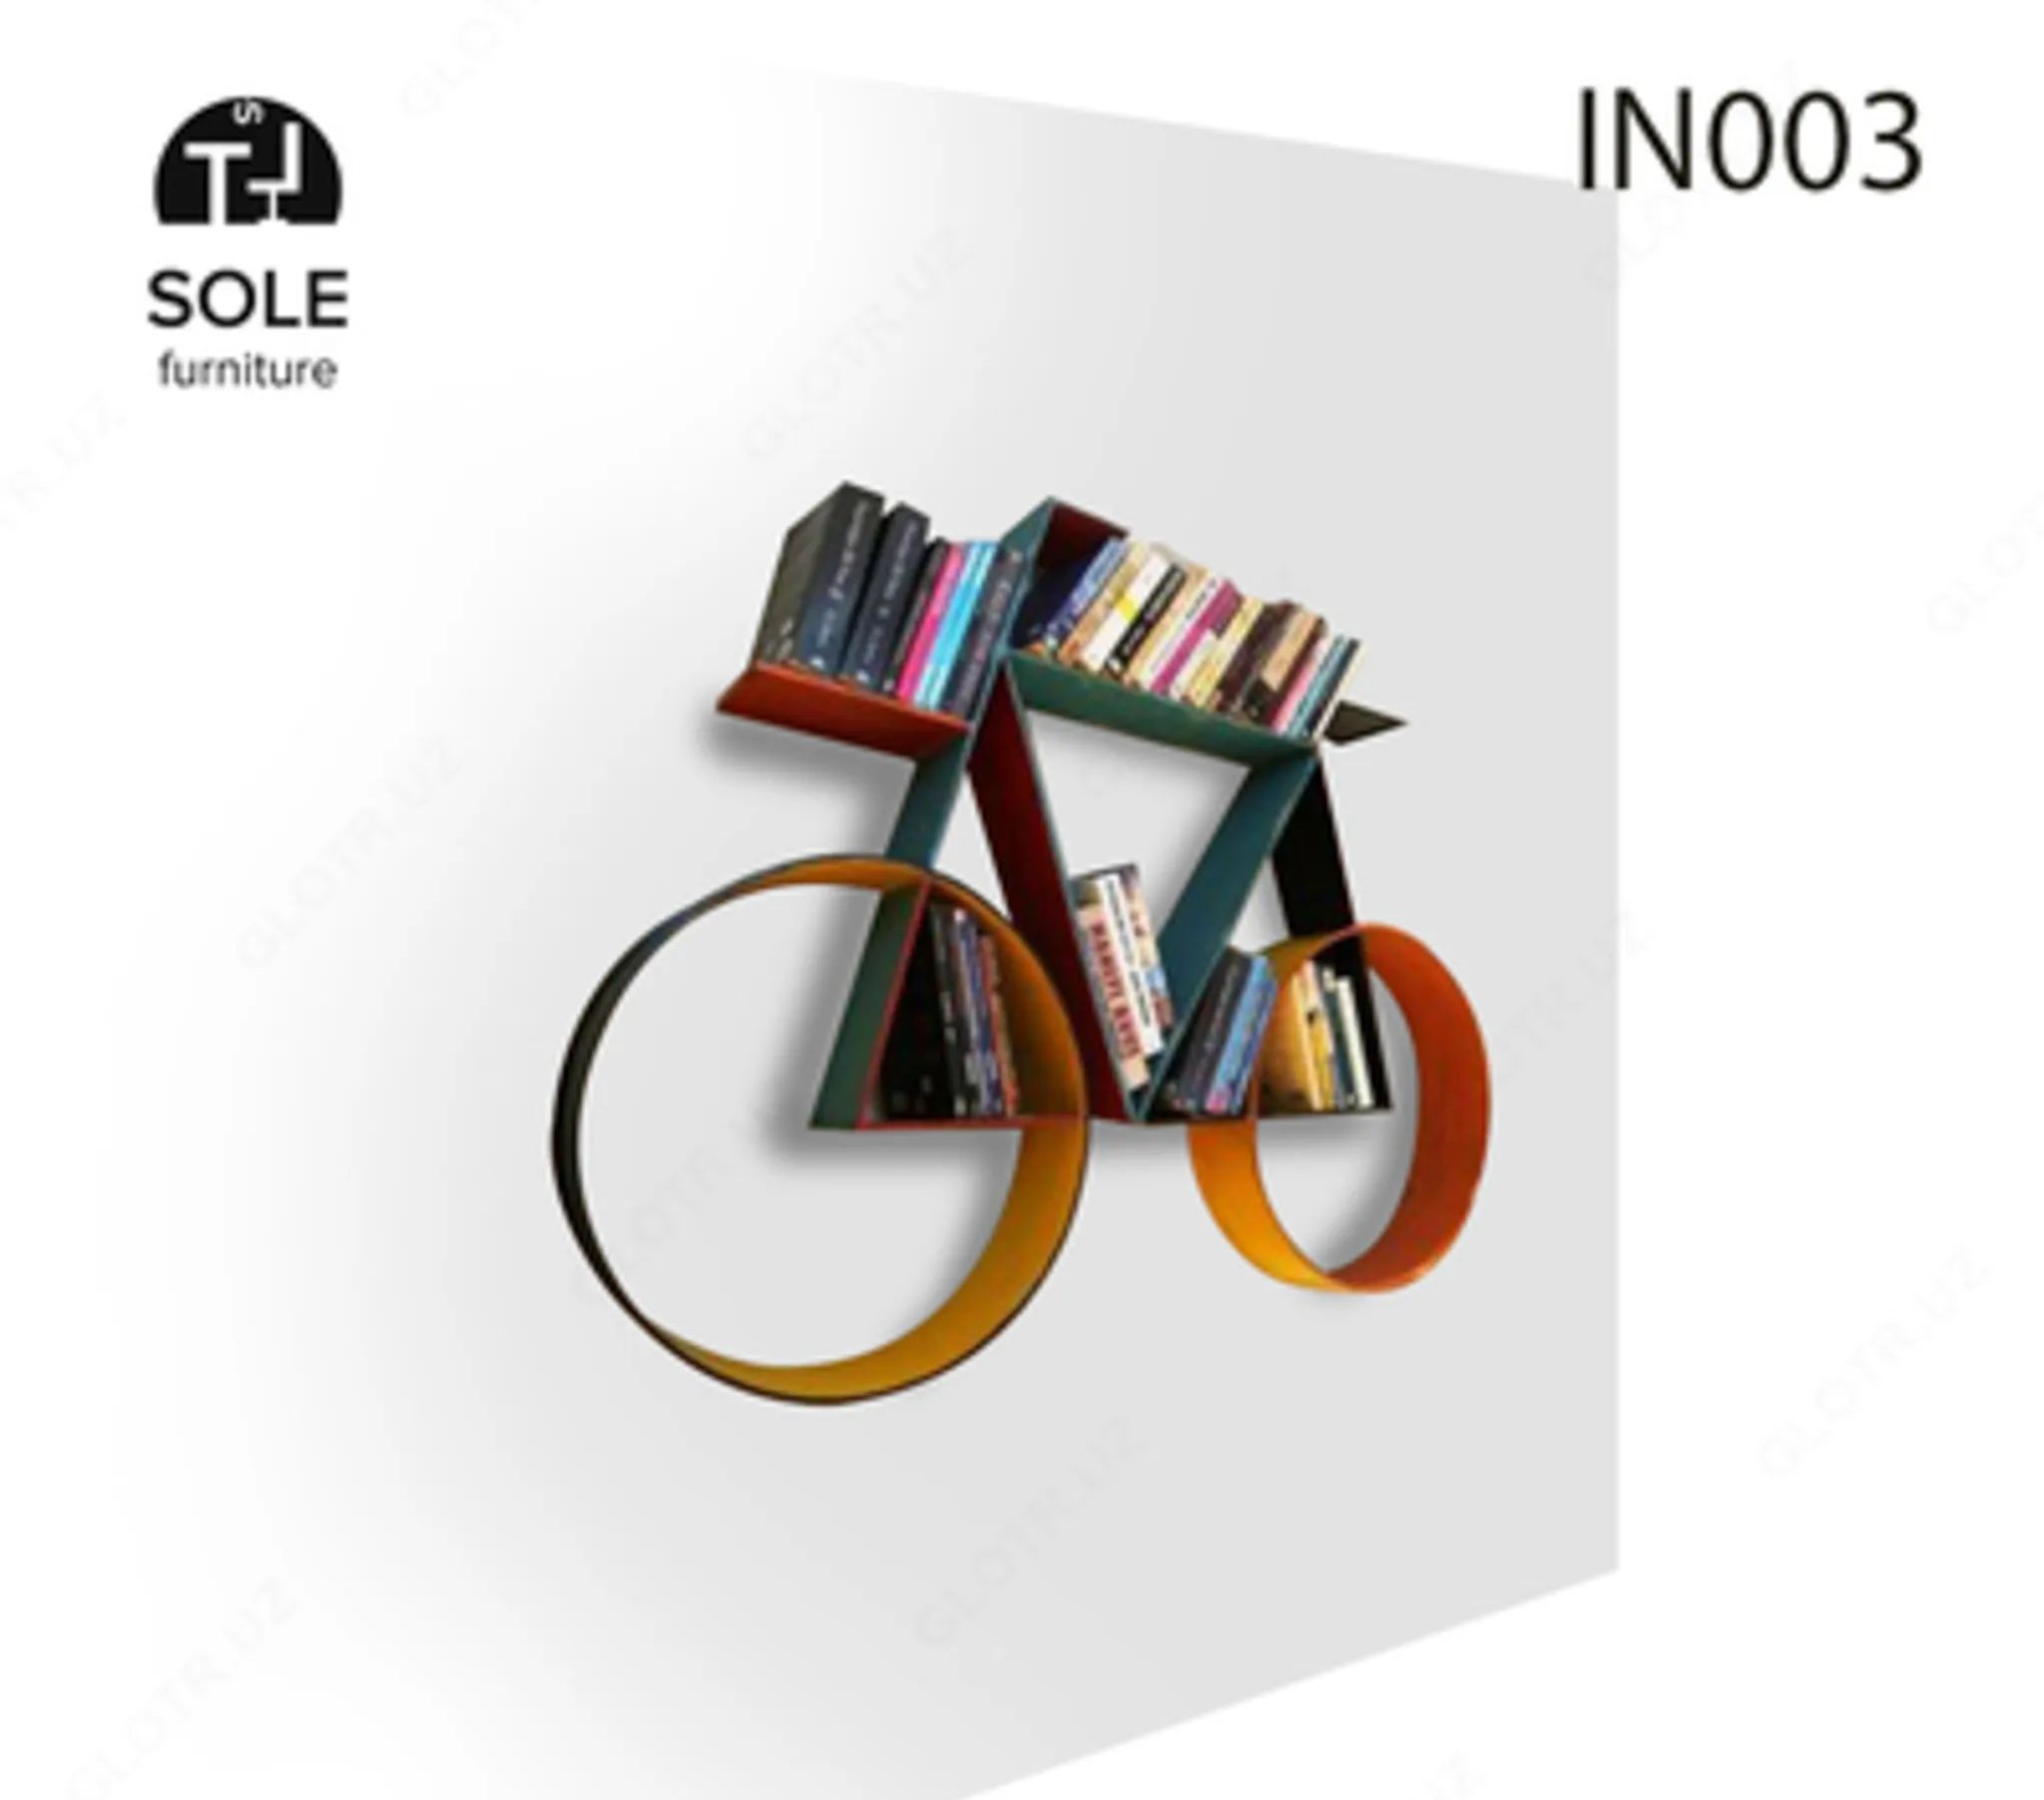 Kitoblar uchun javon, "IN003" modeli#1